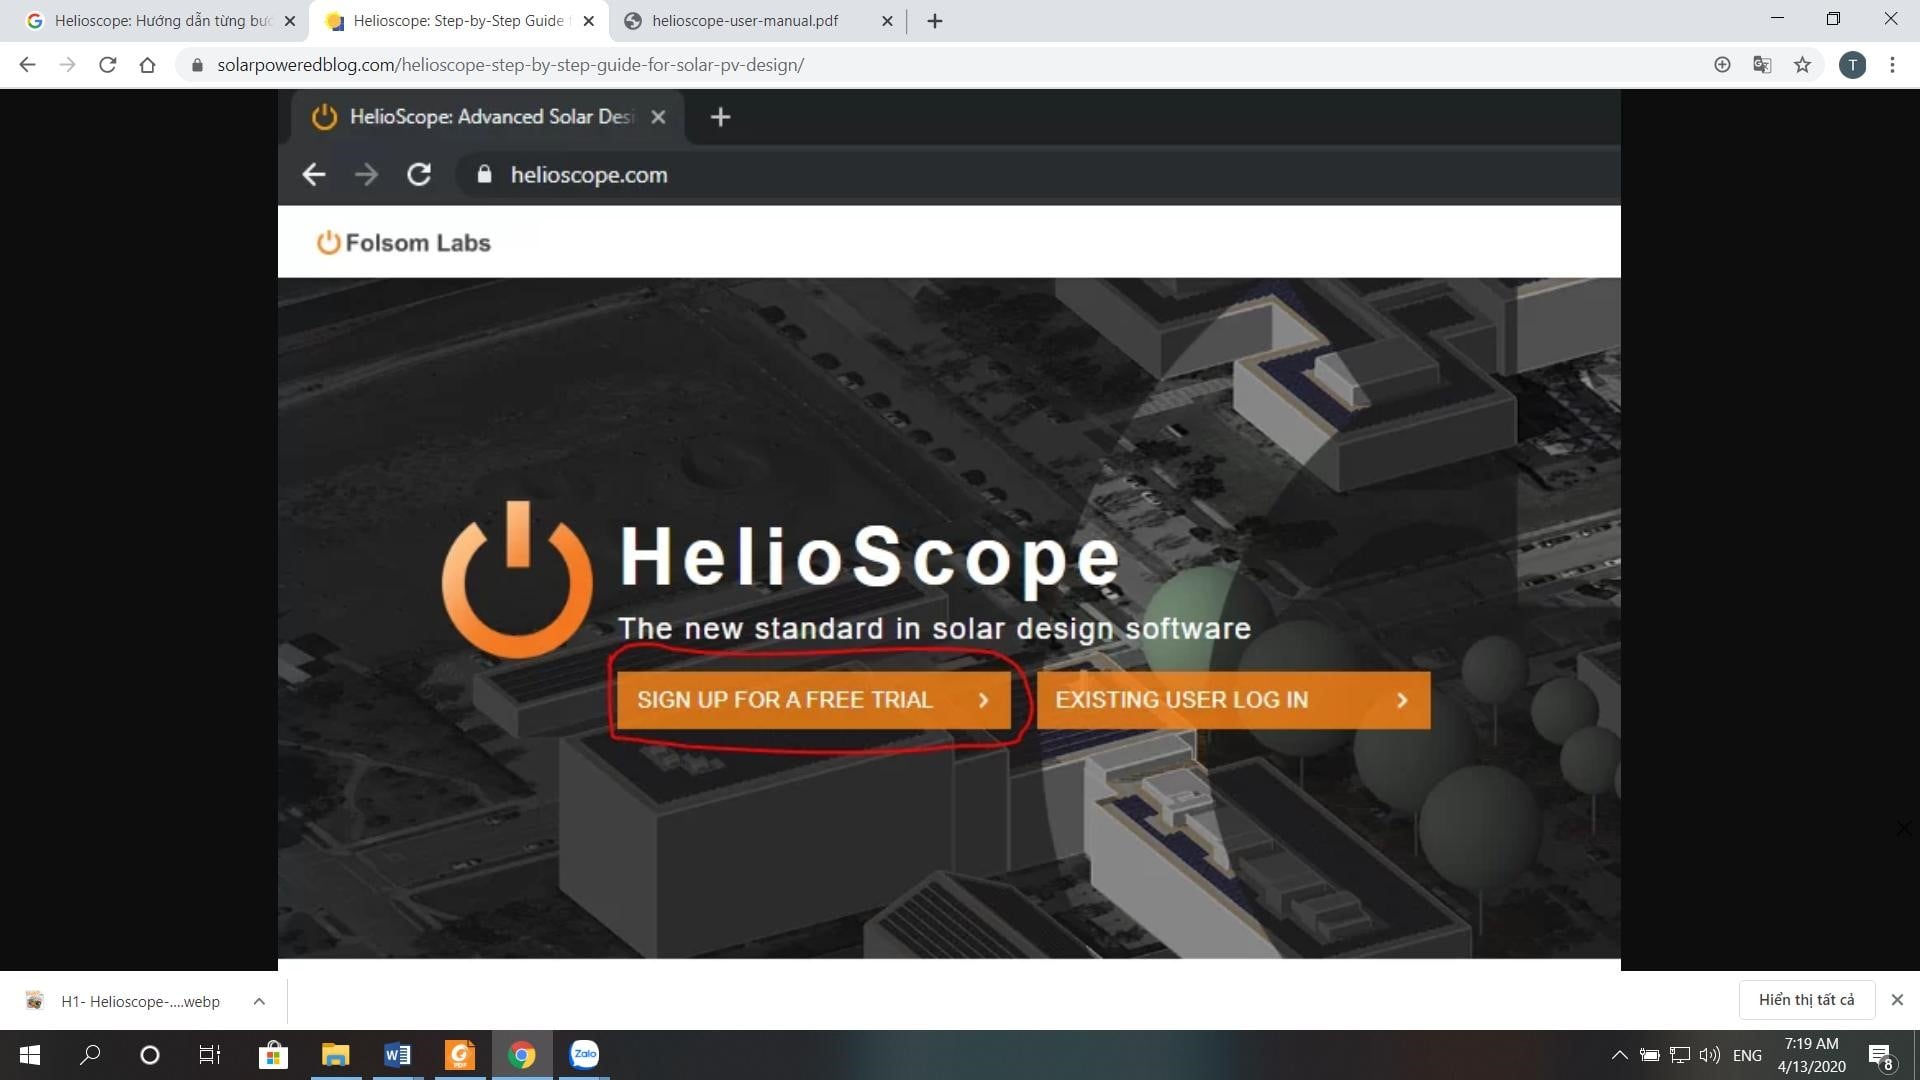 Helioscope: Hướng dẫn từng bước cho thiết kế PV mặt trời 1